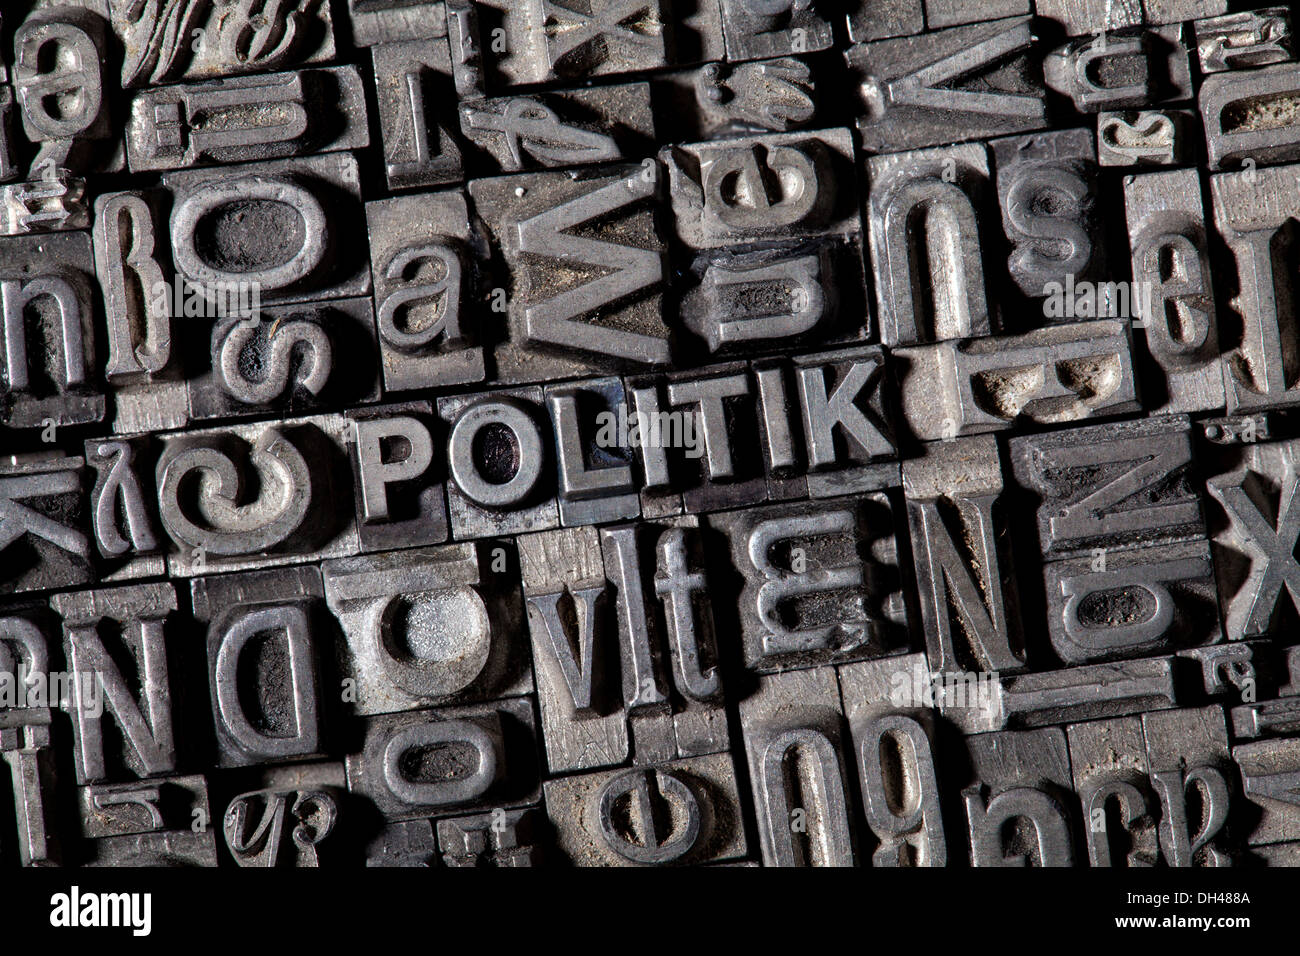 Antiguas letras de plomo que forman la palabra "politik", Alemán para 'política' Foto de stock